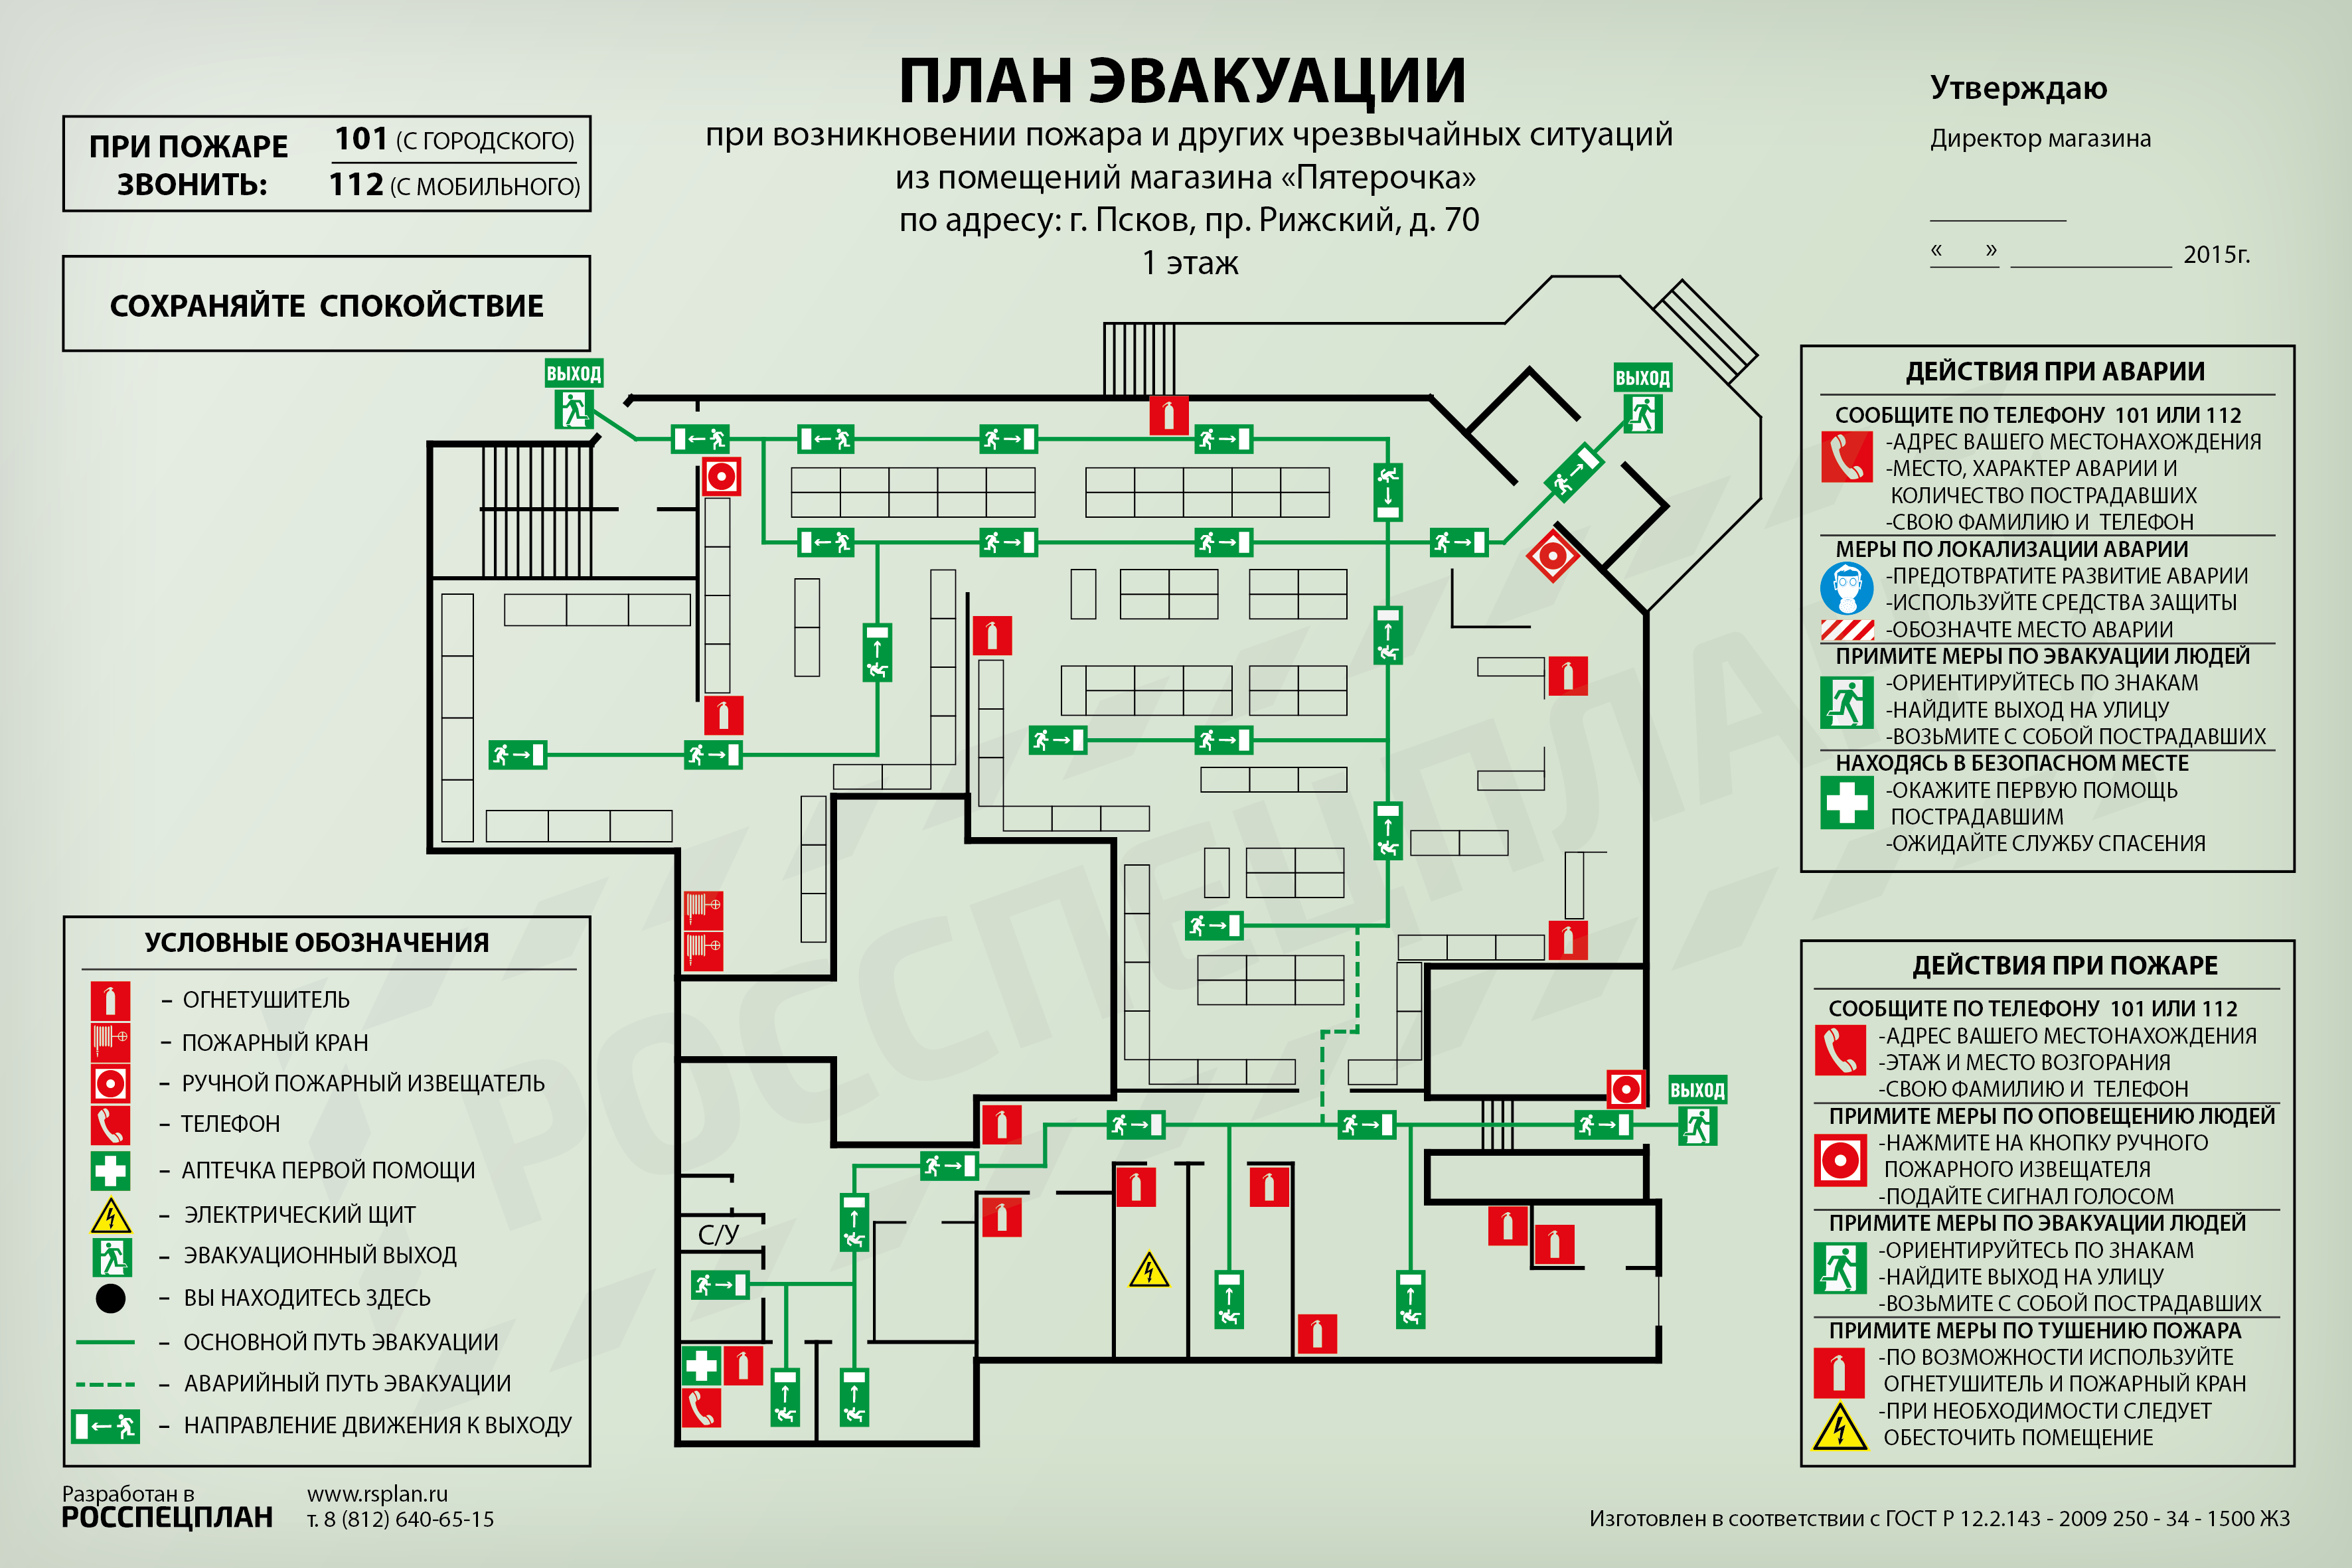 Схема планировки торгового зала